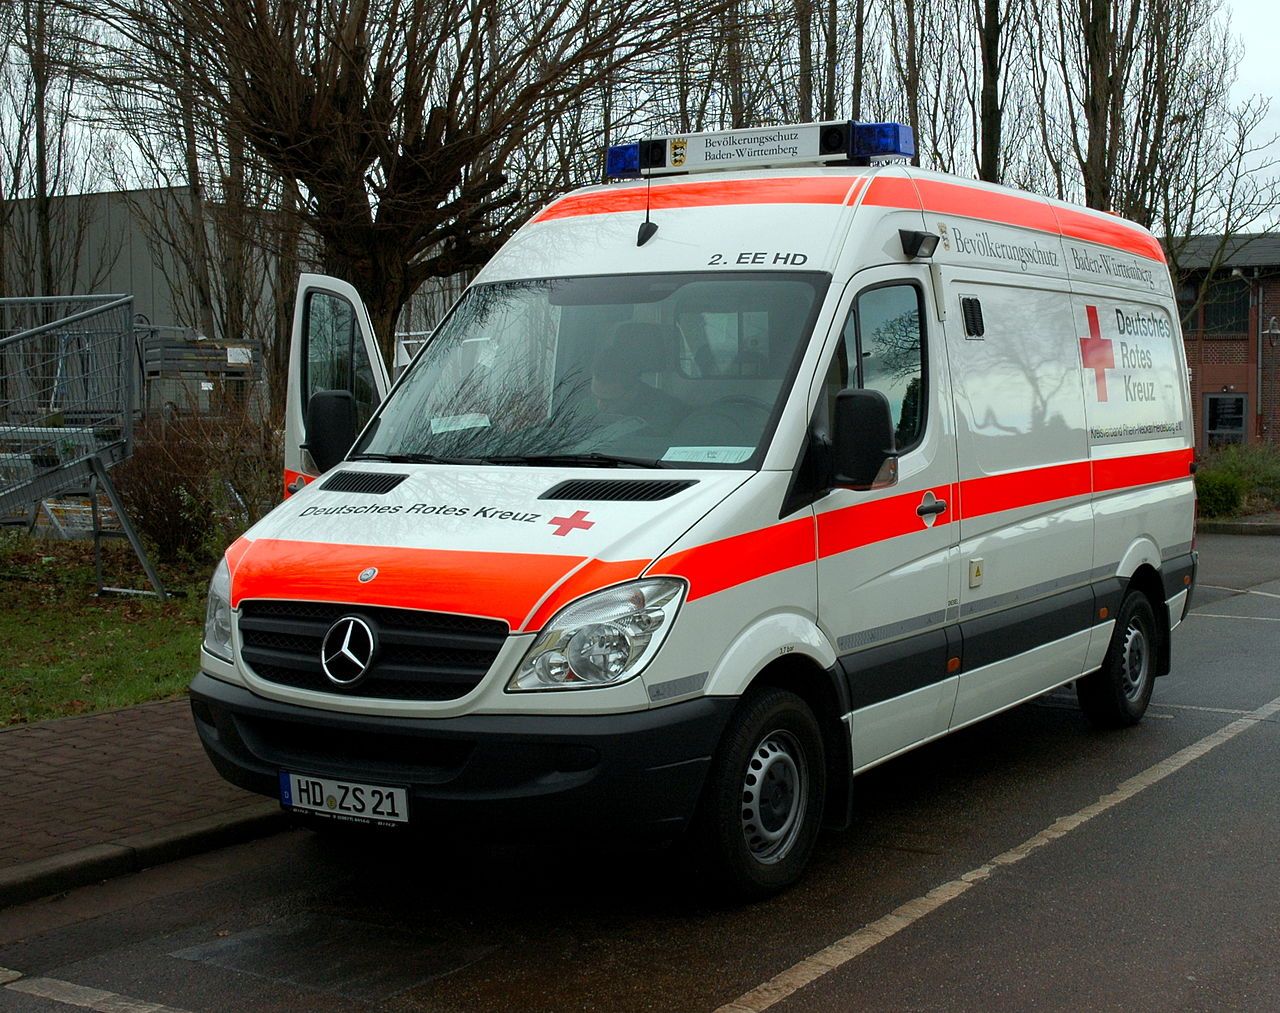 File:Heidelberg - Ambulance Mercedes-Benz Deutsches Rotes